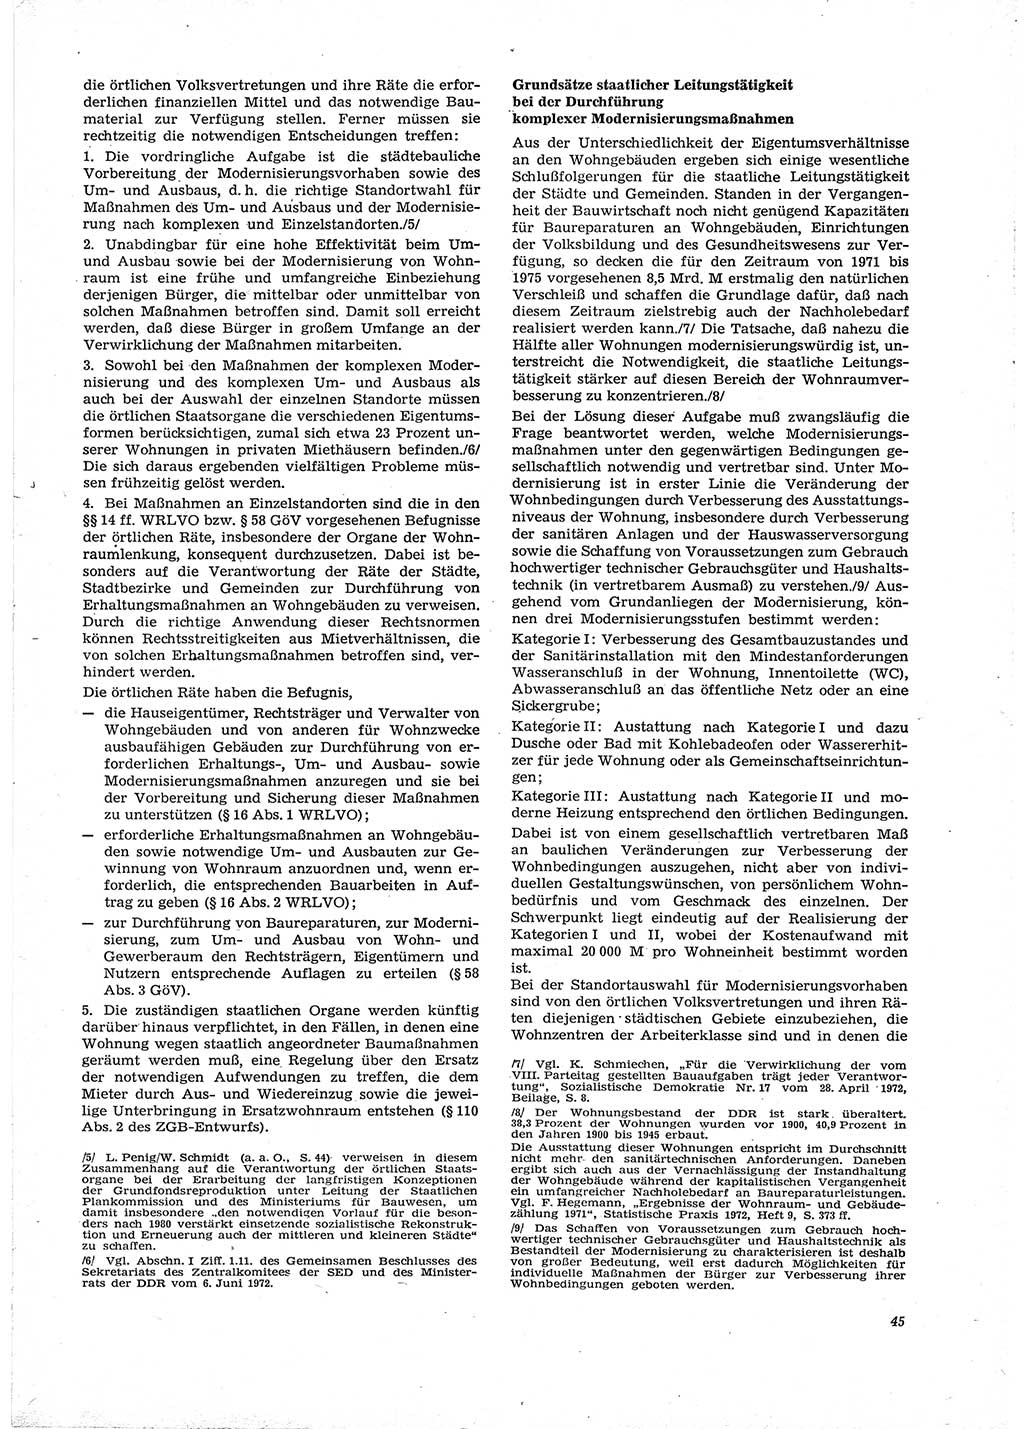 Neue Justiz (NJ), Zeitschrift für Recht und Rechtswissenschaft [Deutsche Demokratische Republik (DDR)], 29. Jahrgang 1975, Seite 45 (NJ DDR 1975, S. 45)